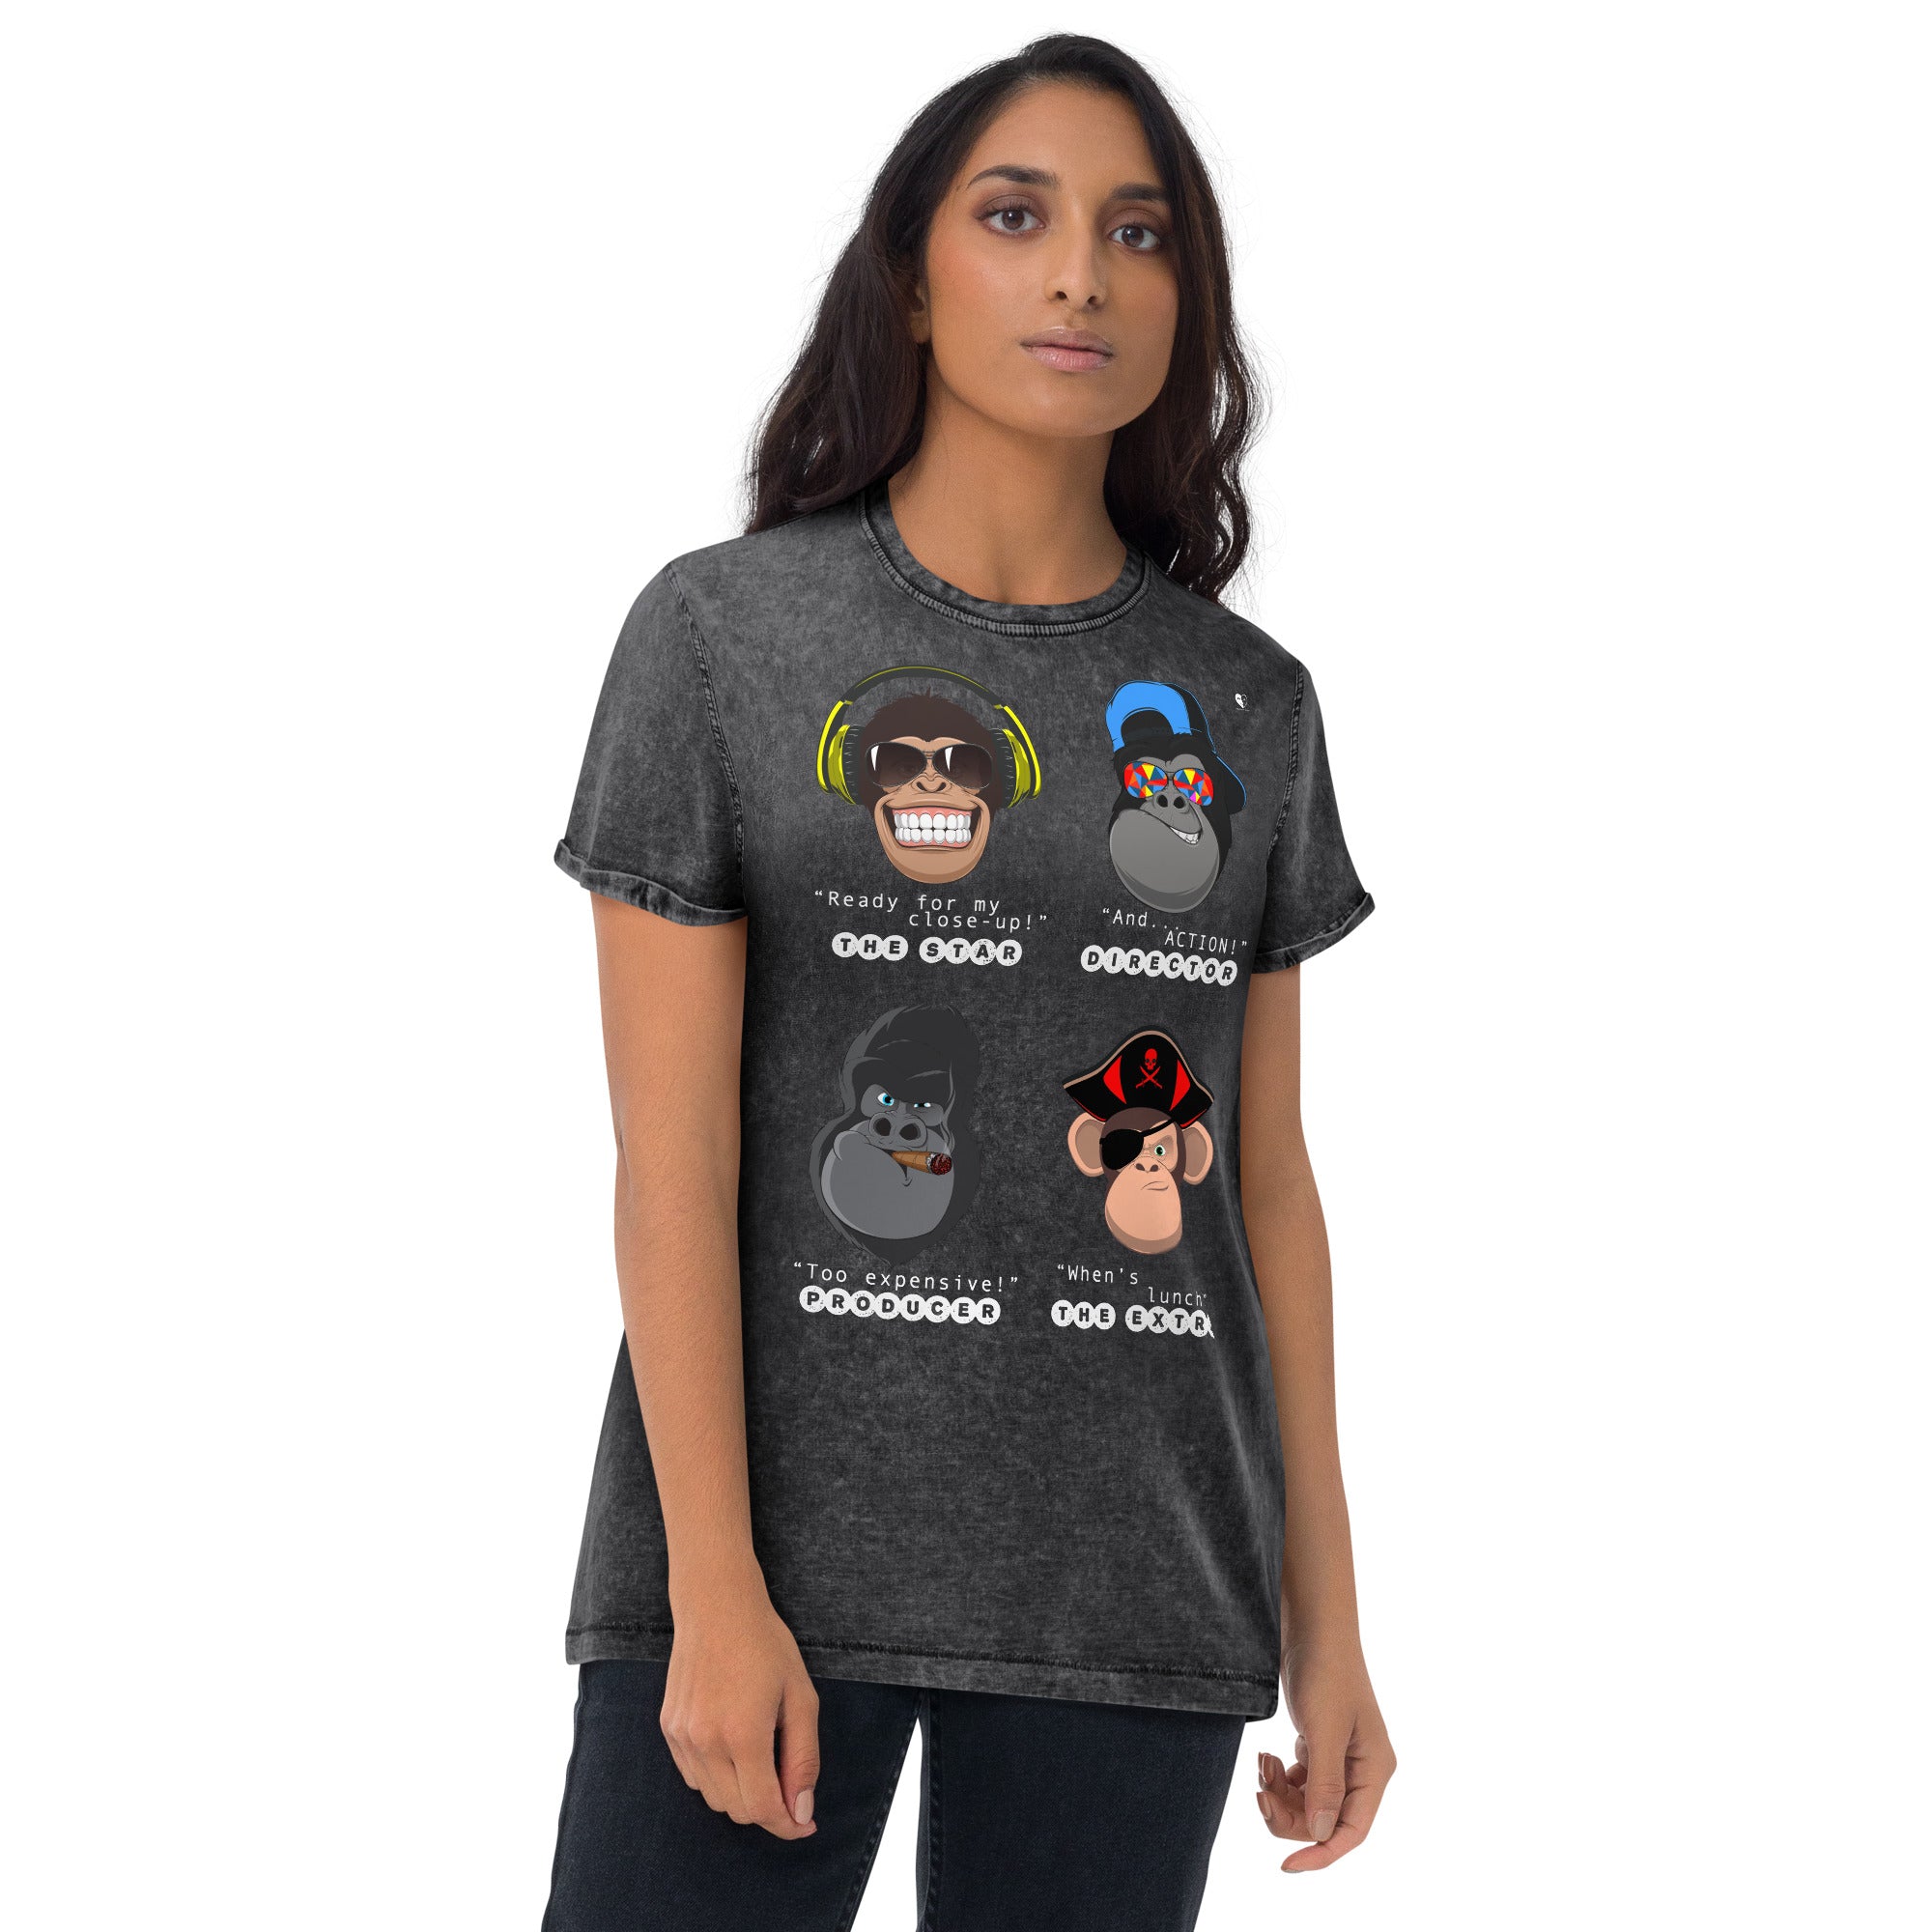 Movie Monkeys - Denim T-Shirt